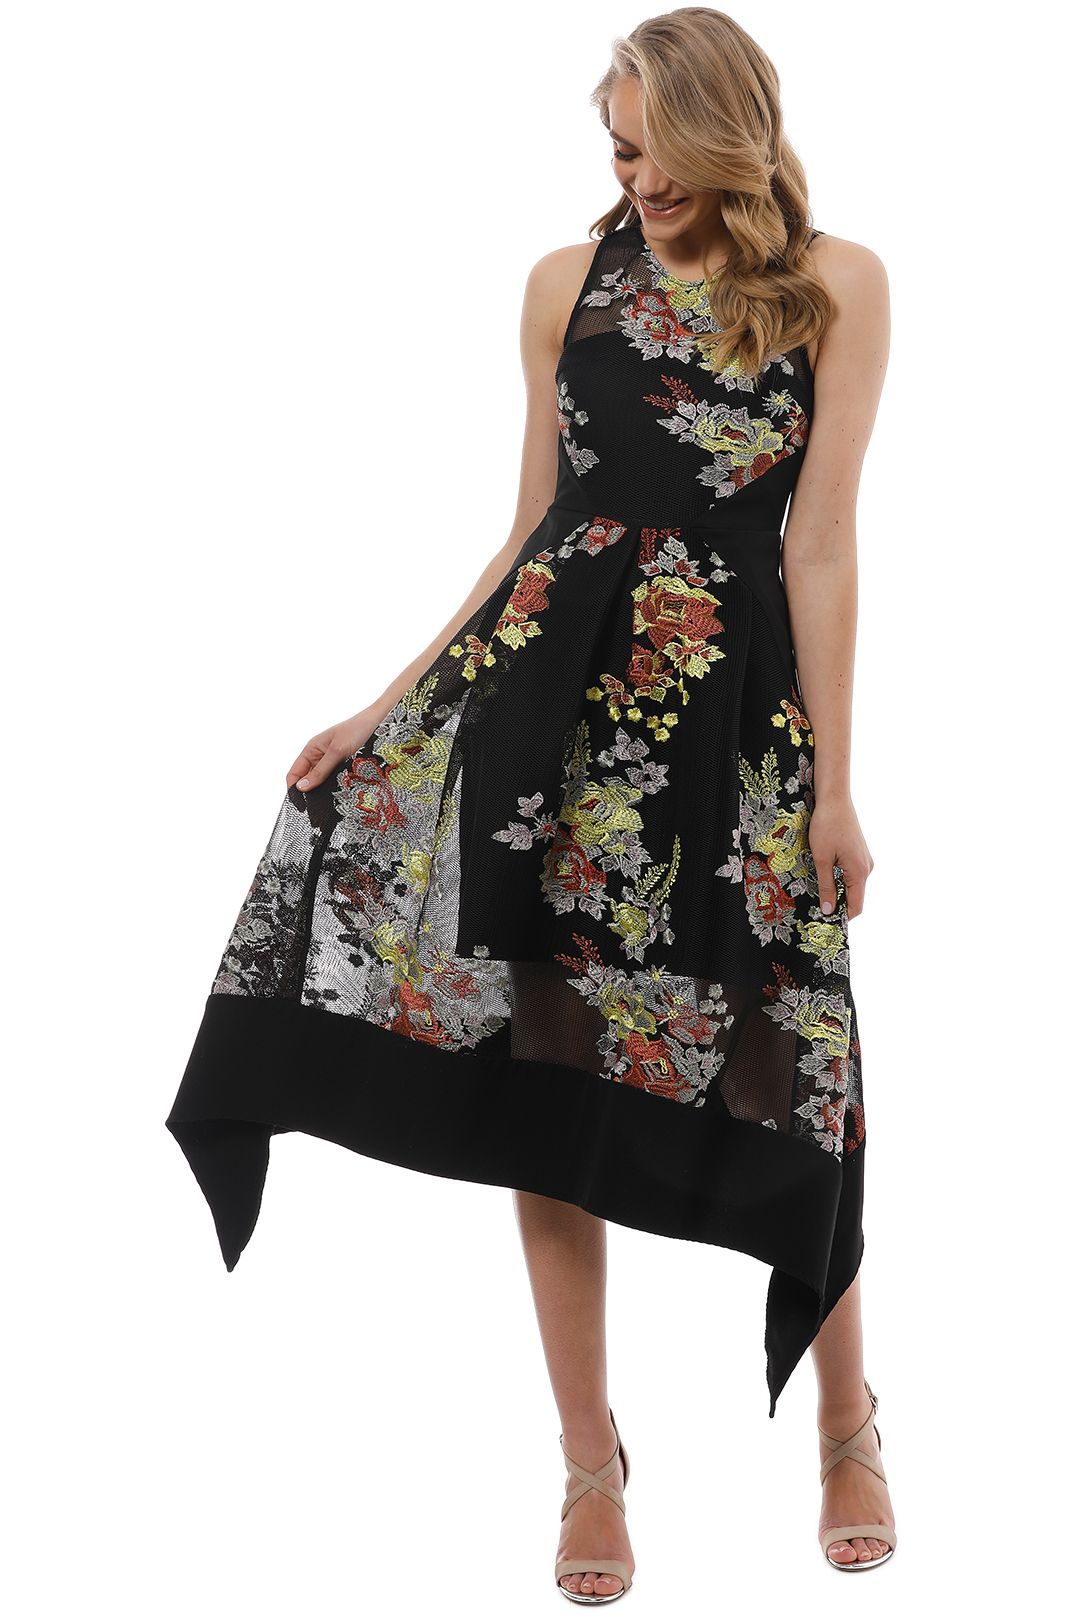 Premonition - Secret Garden Dress - Black Floral - Front